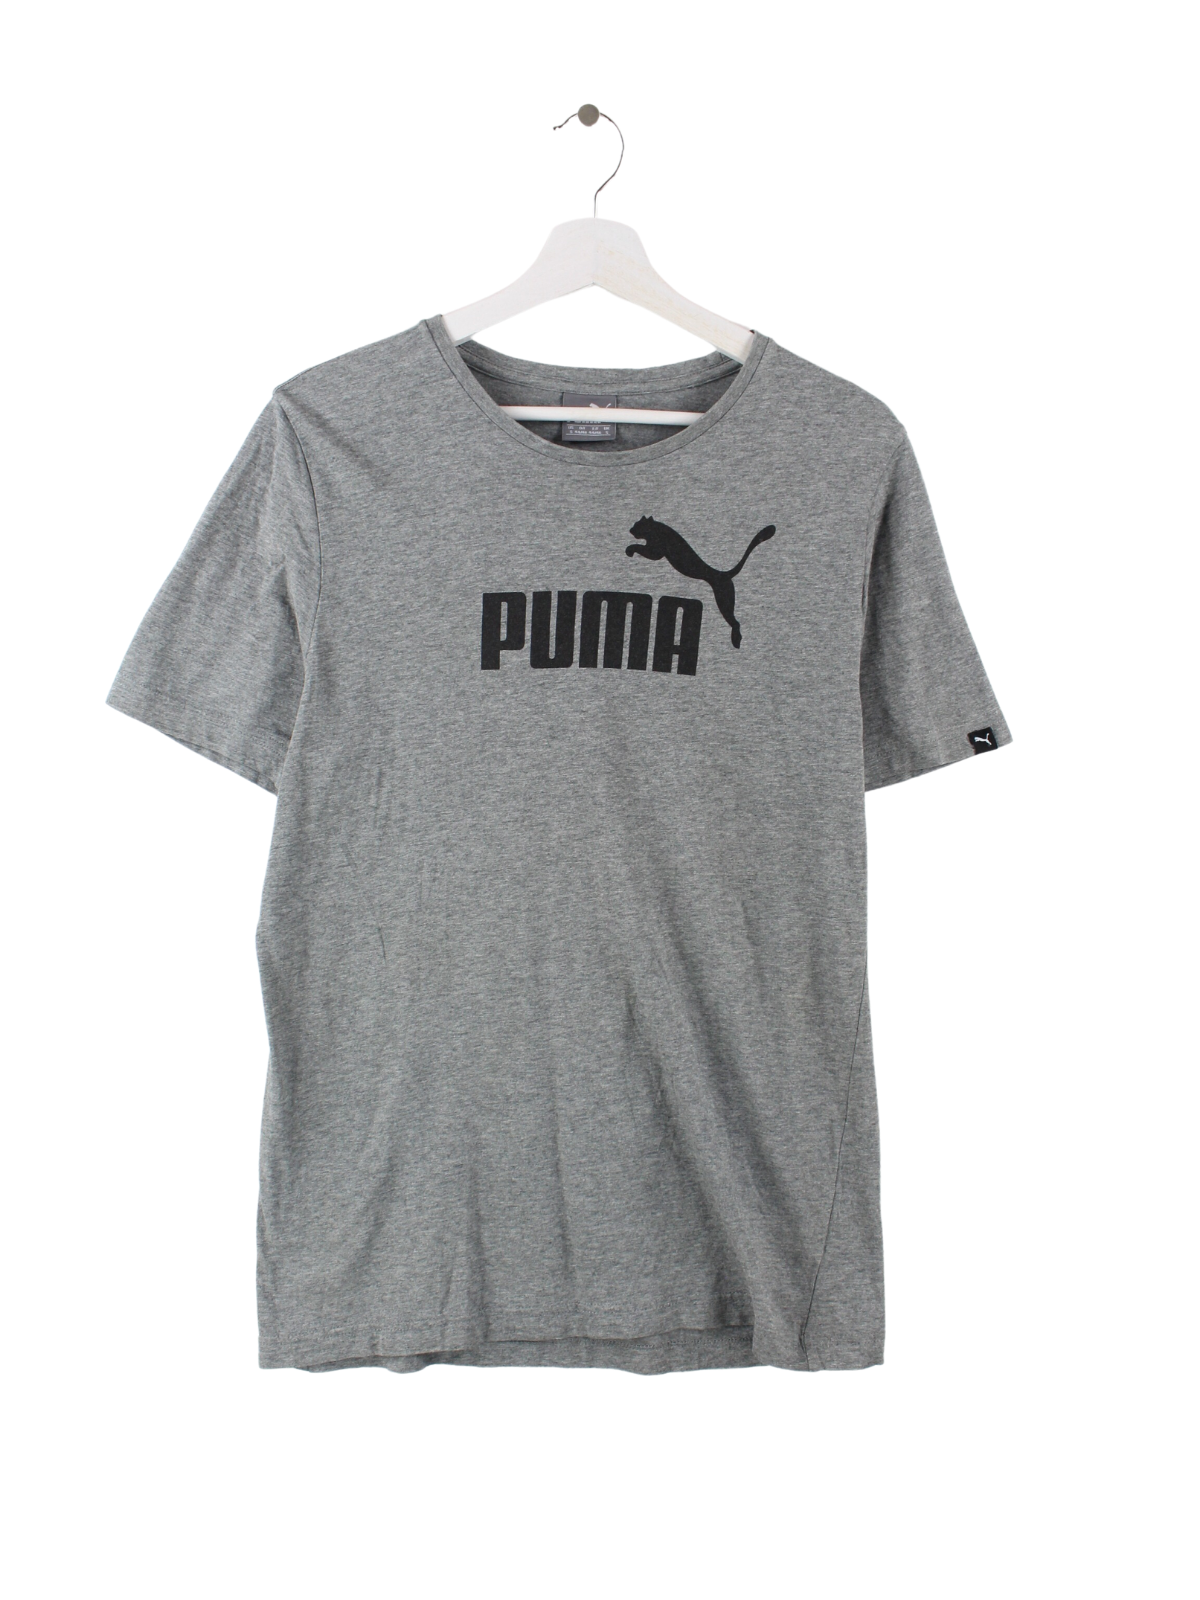 Puma Print T-Shirt Grau S